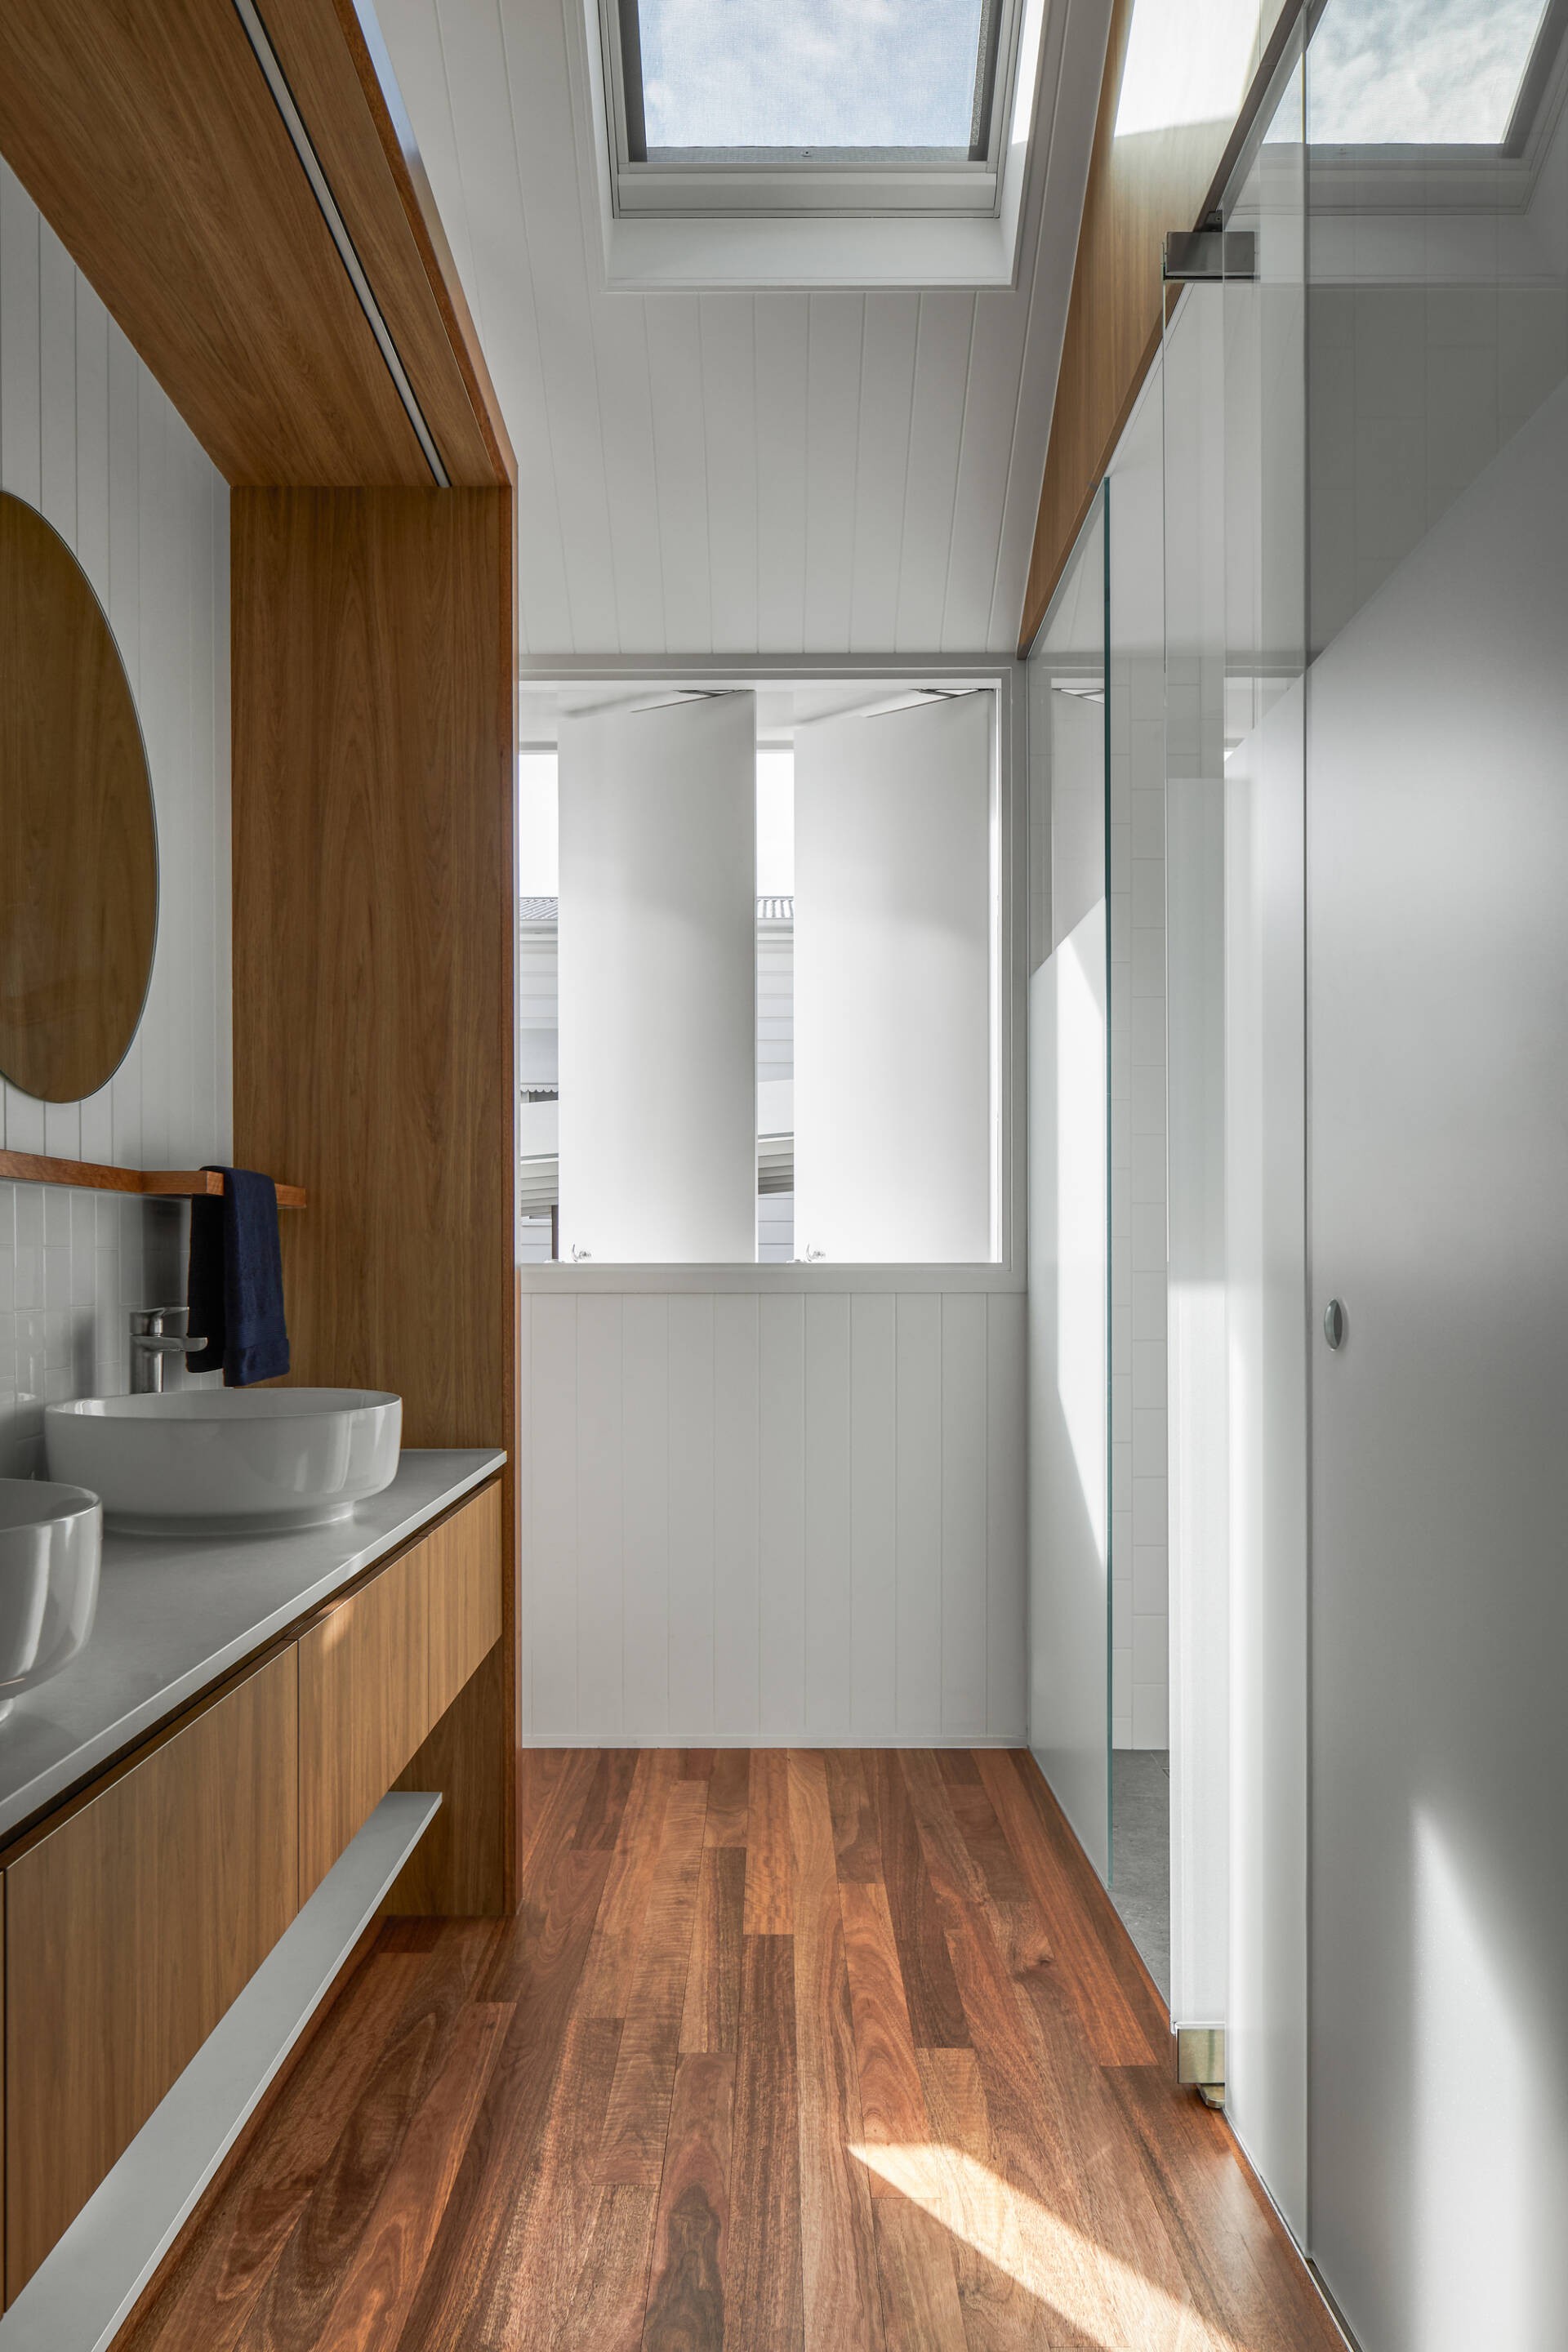 
Khu vực vệ sinh và phòng tắm của căn nhà được tô điểm thêm màu trắng mang đến cảm giác gọn gàng, sạch sẽ
